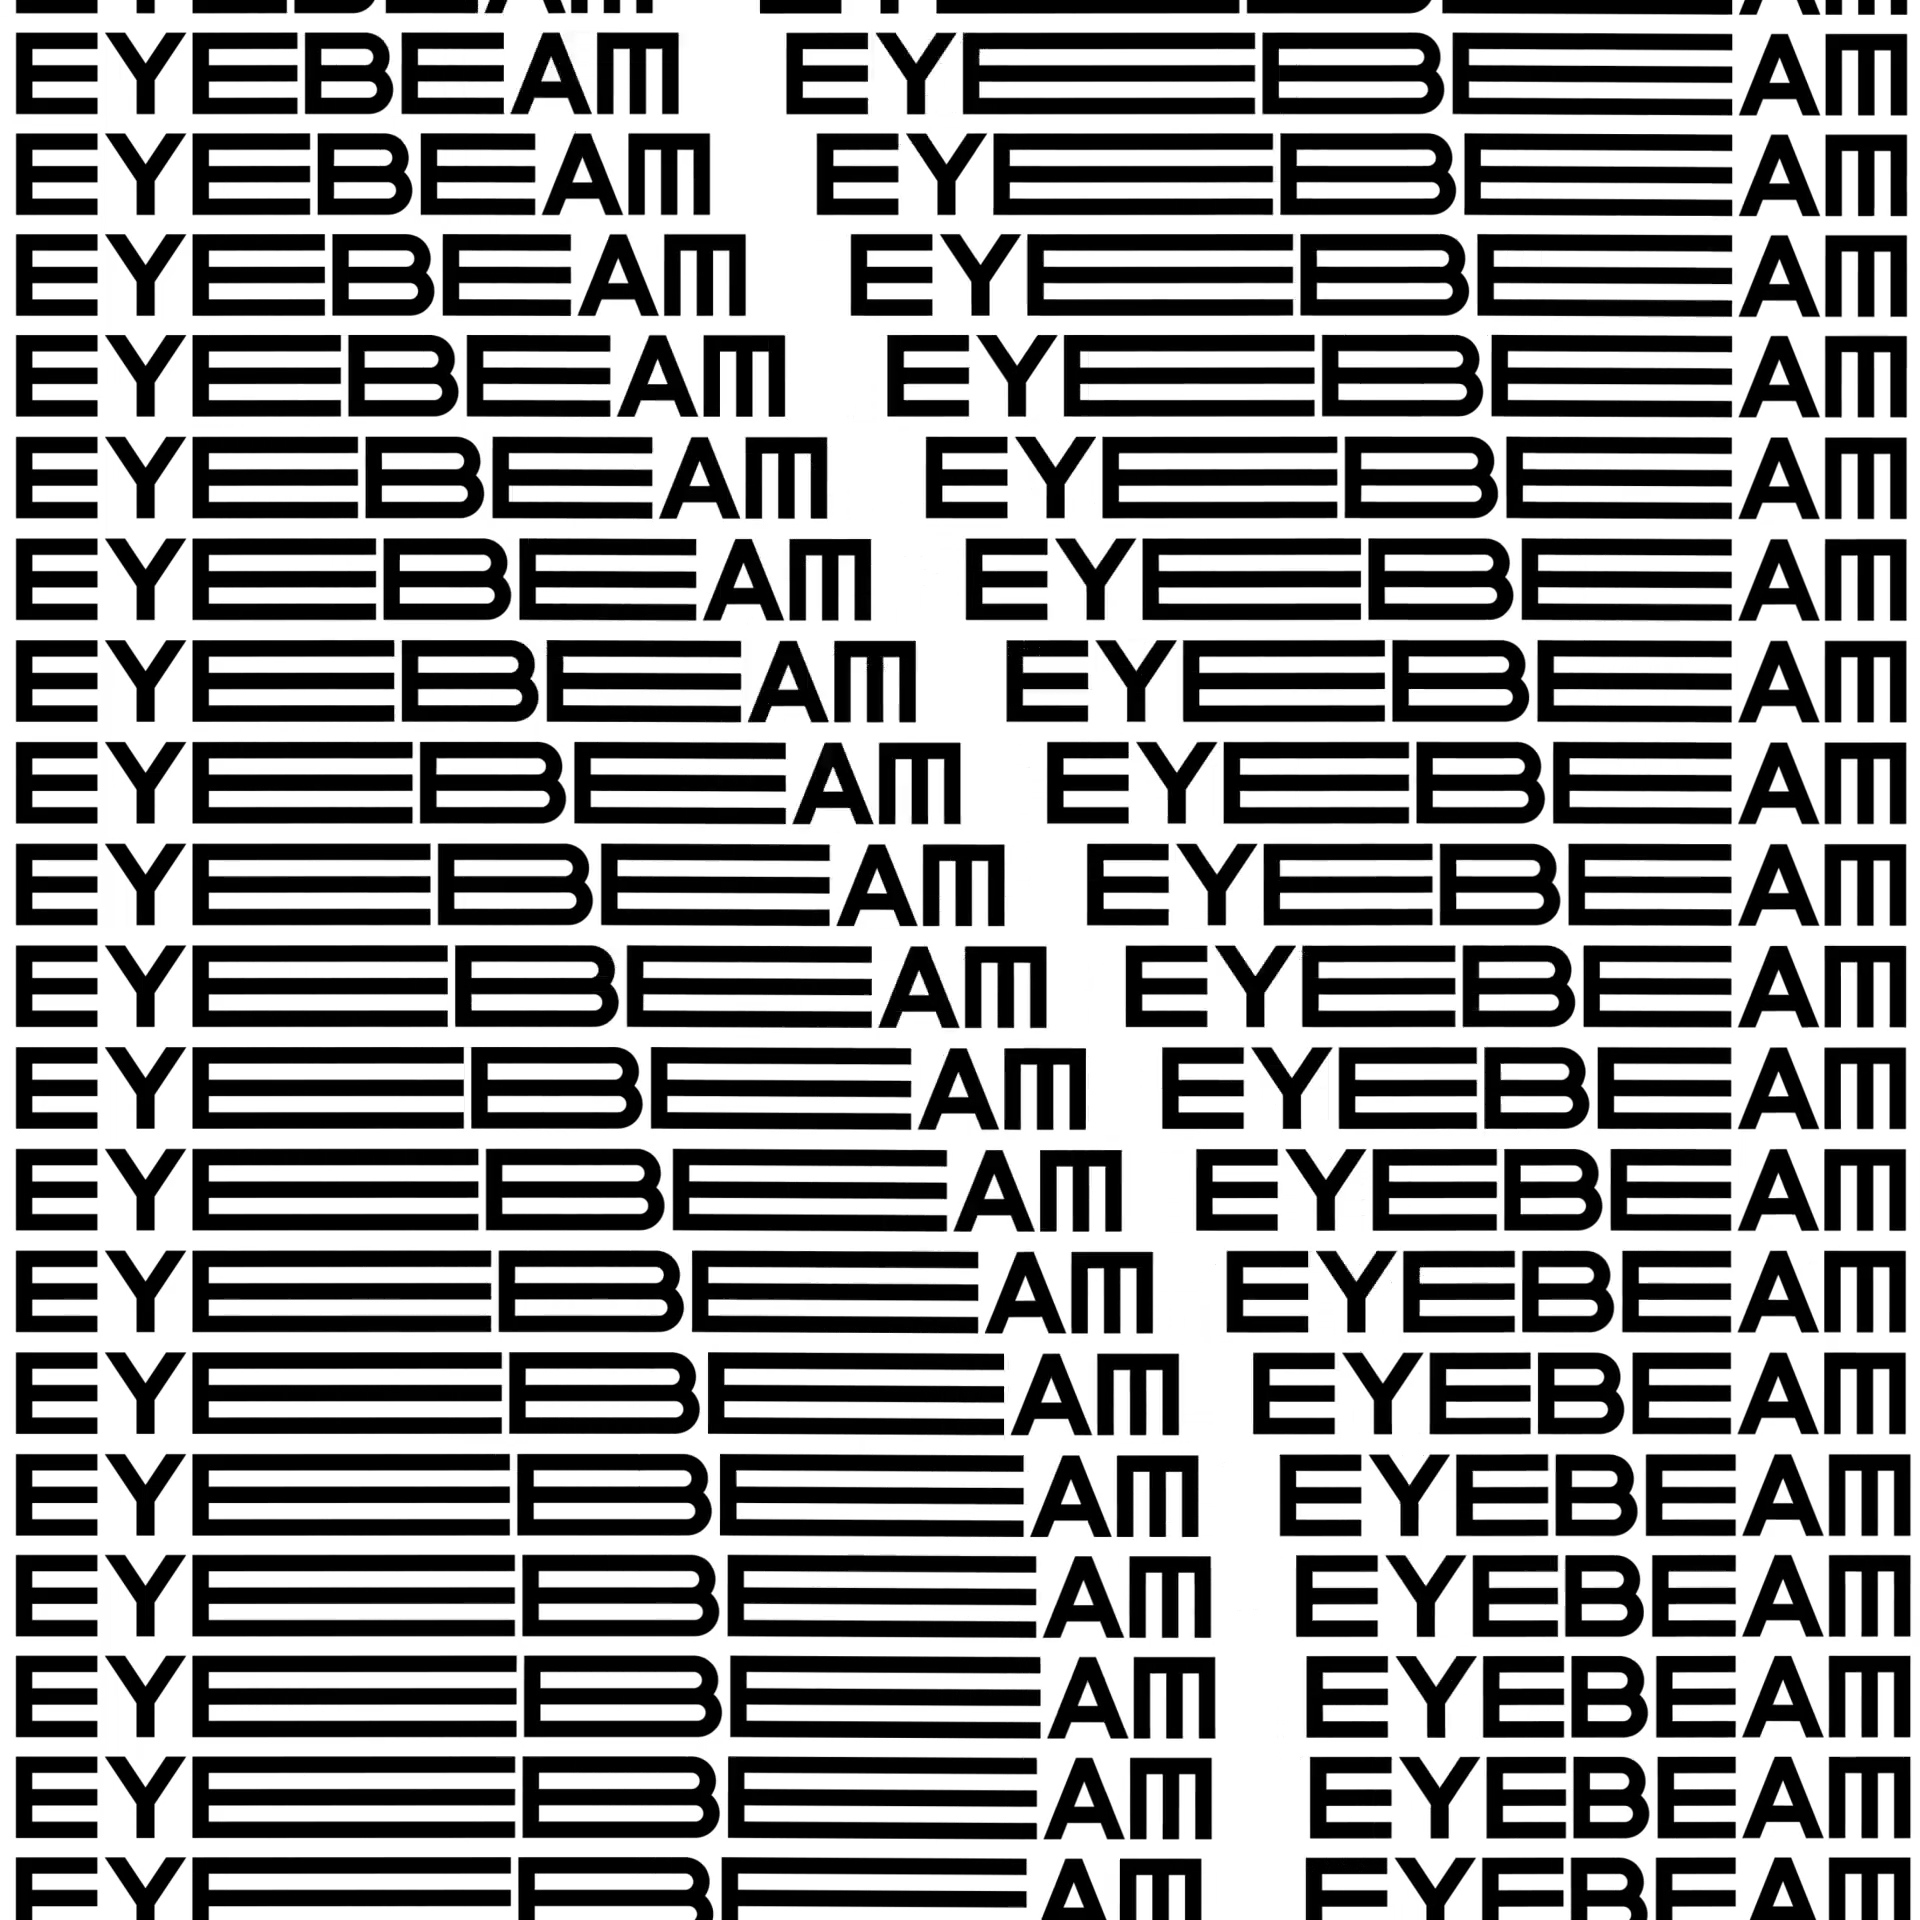 Eyebeam